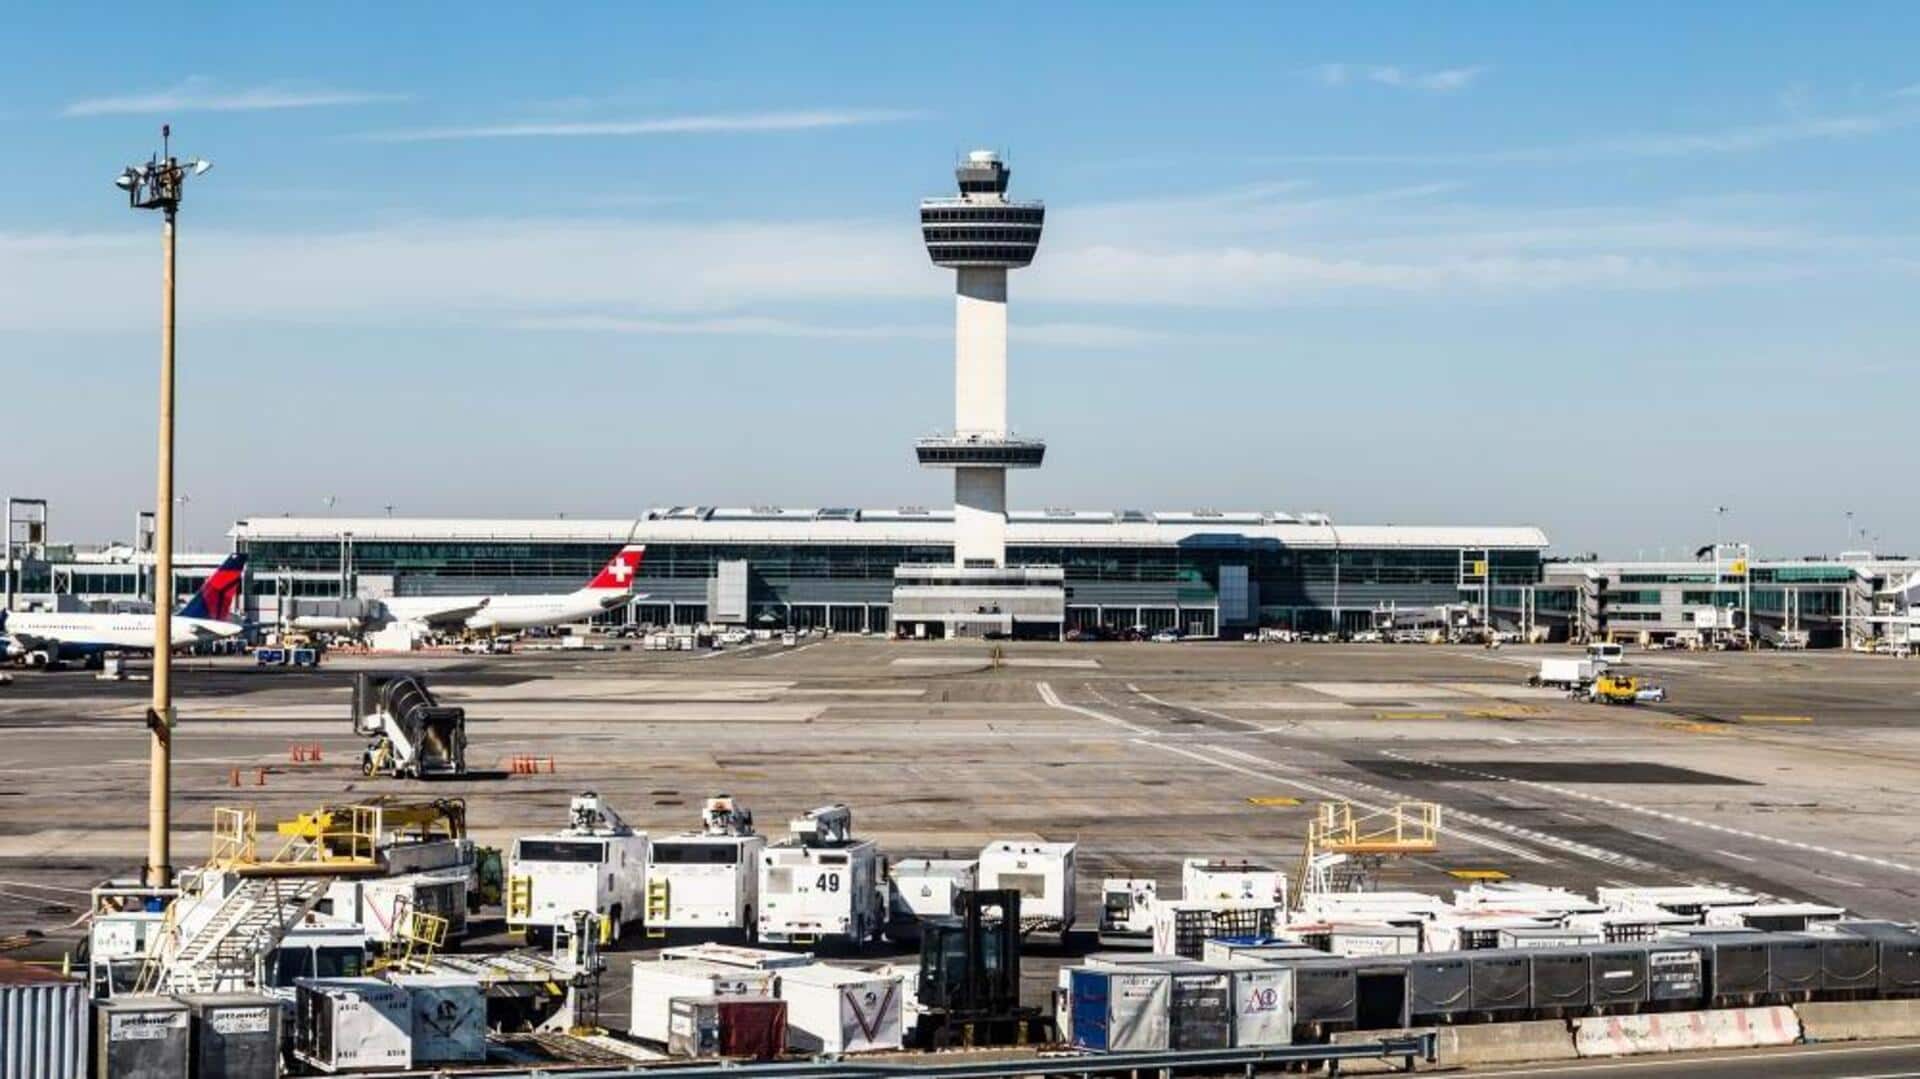 अमेरिका: JFK हवाई अड्डे पर स्विस एयर का विमान 4 अन्य विमानों से टकराने से बचा